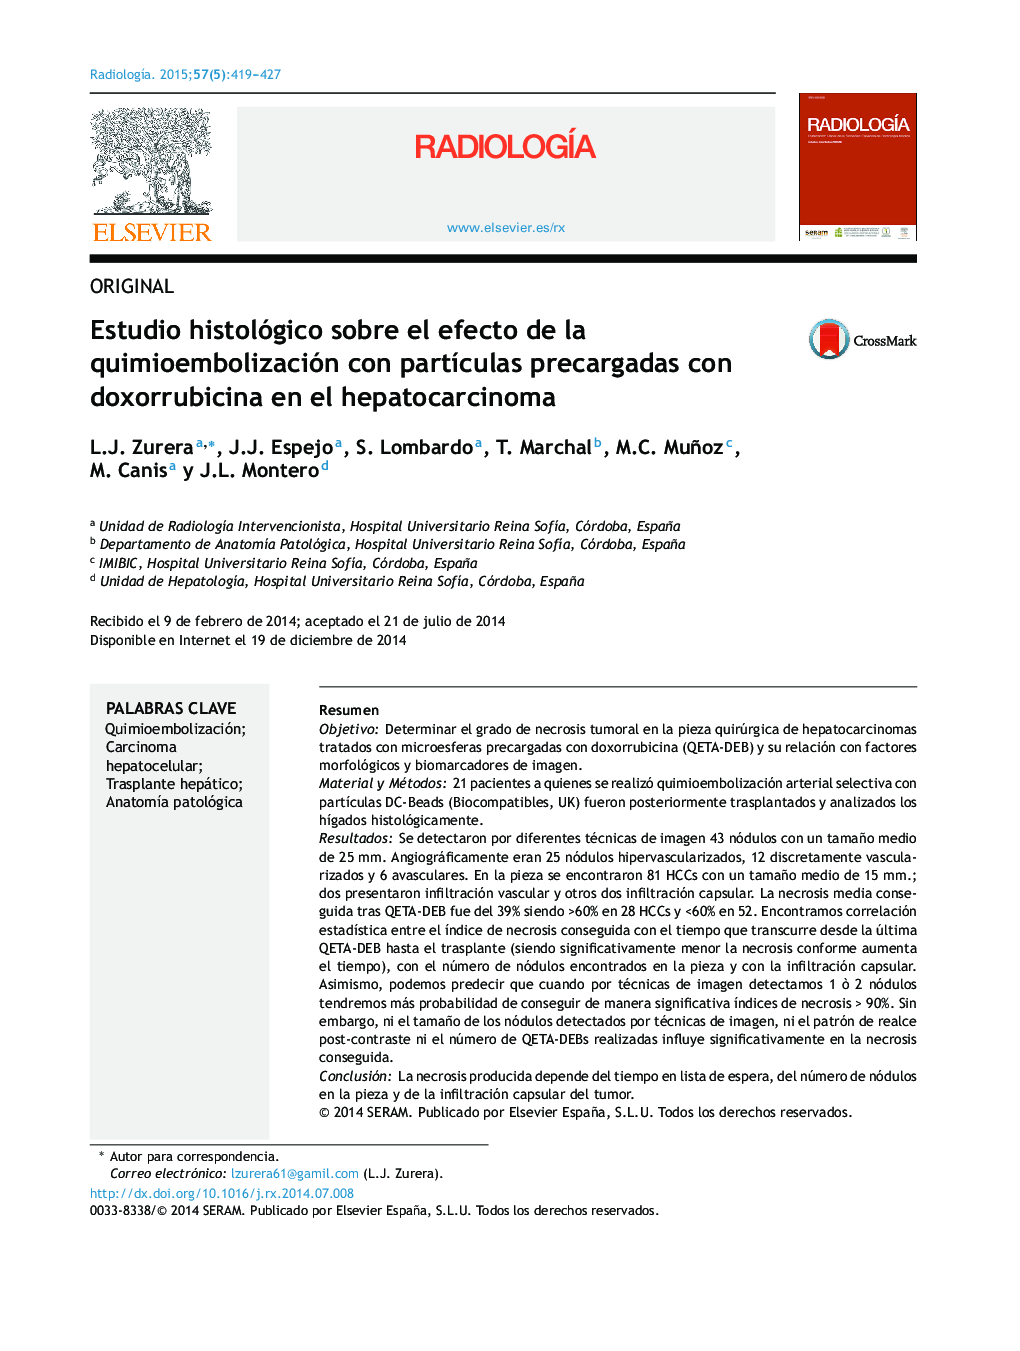 Estudio histológico sobre el efecto de la quimioembolización con partículas precargadas con doxorrubicina en el hepatocarcinoma